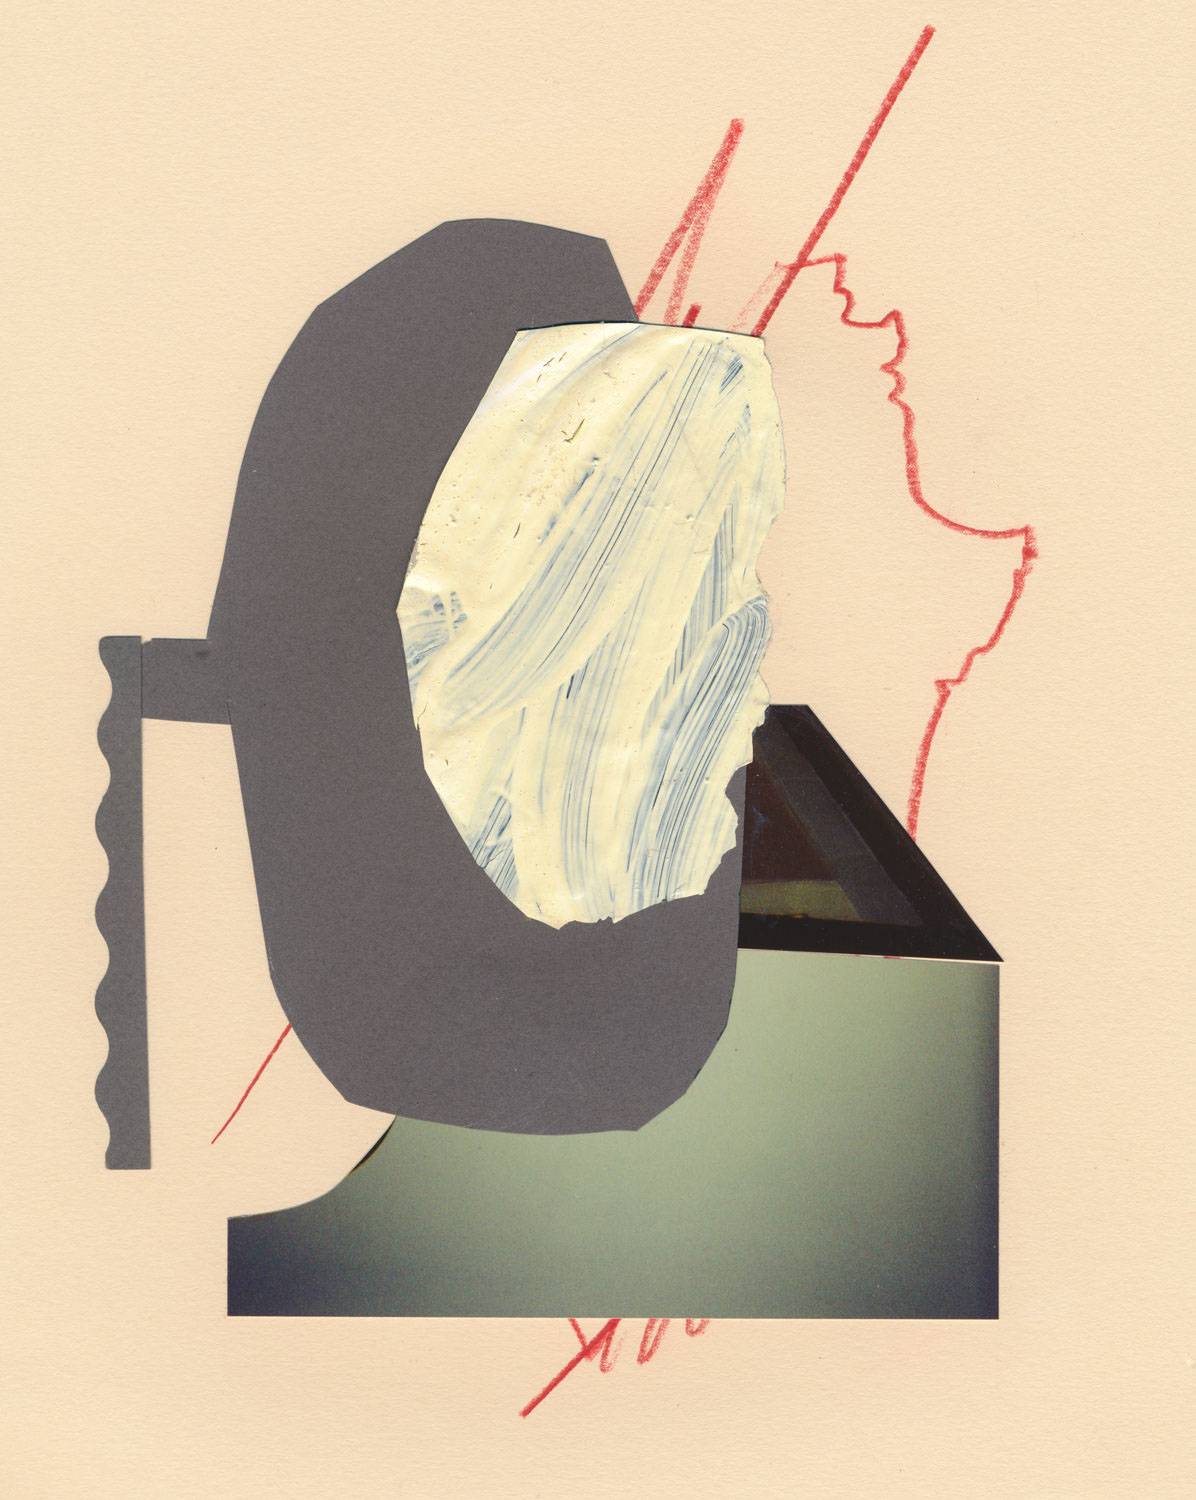 artwork collage constructivism Suprematism futurist Dada paper scissors Glue